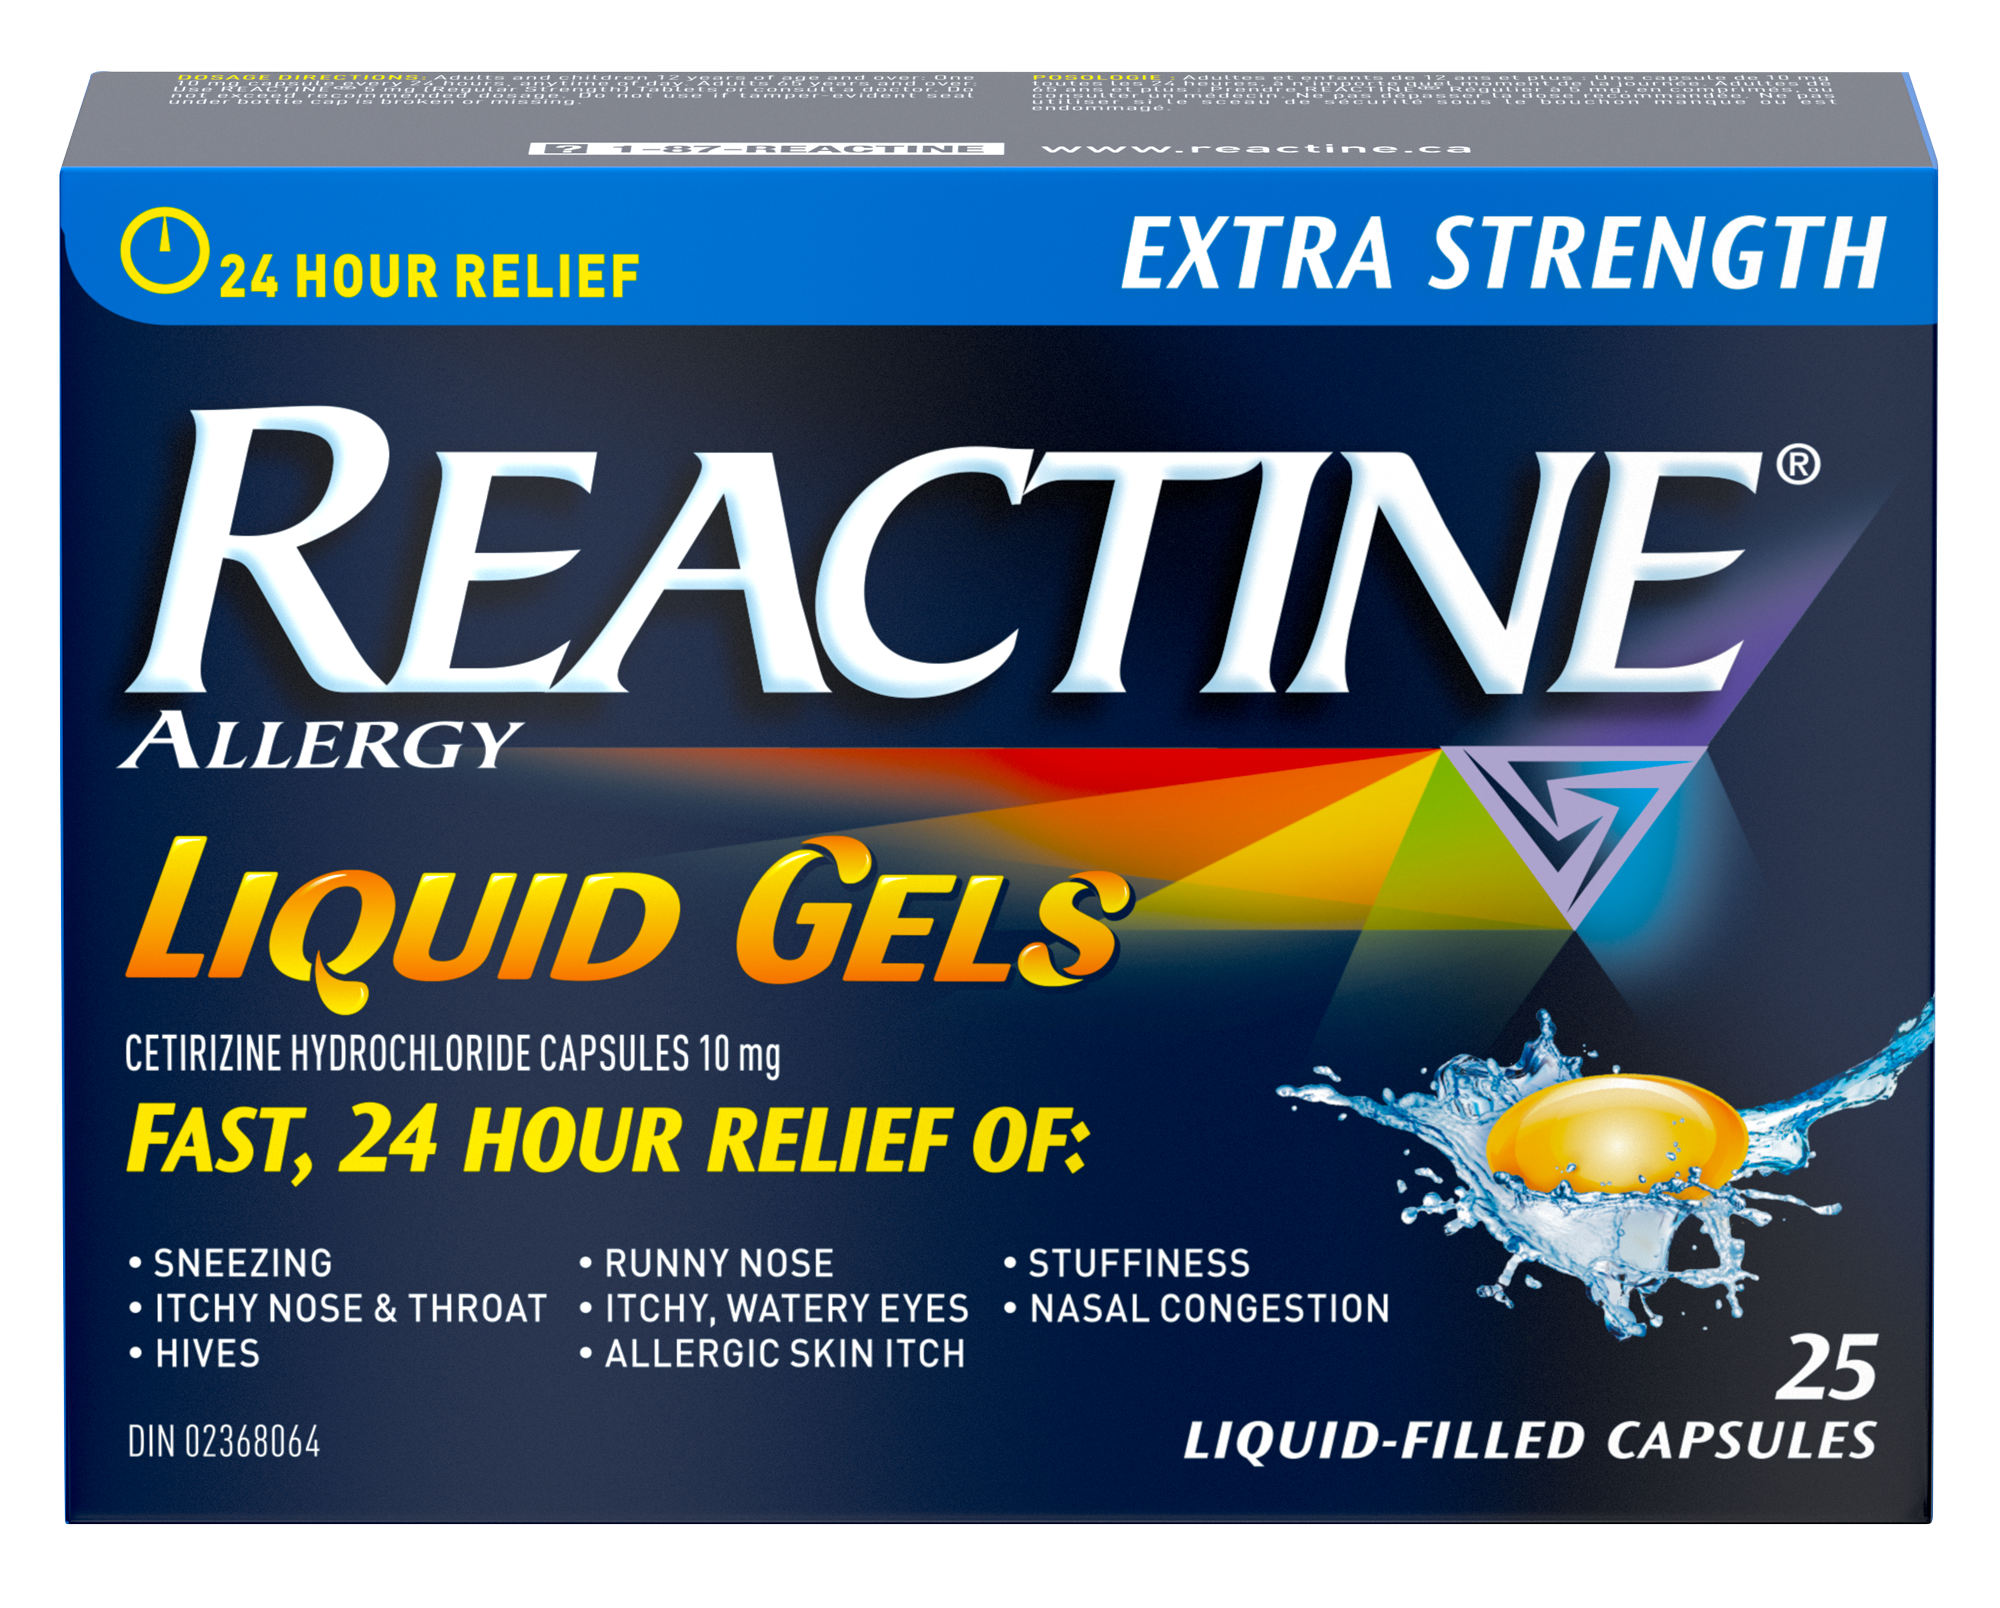 一盒Reactine特強型抗組胺片（10毫克），鹽酸西替利嗪，過敏藥，25片裝。